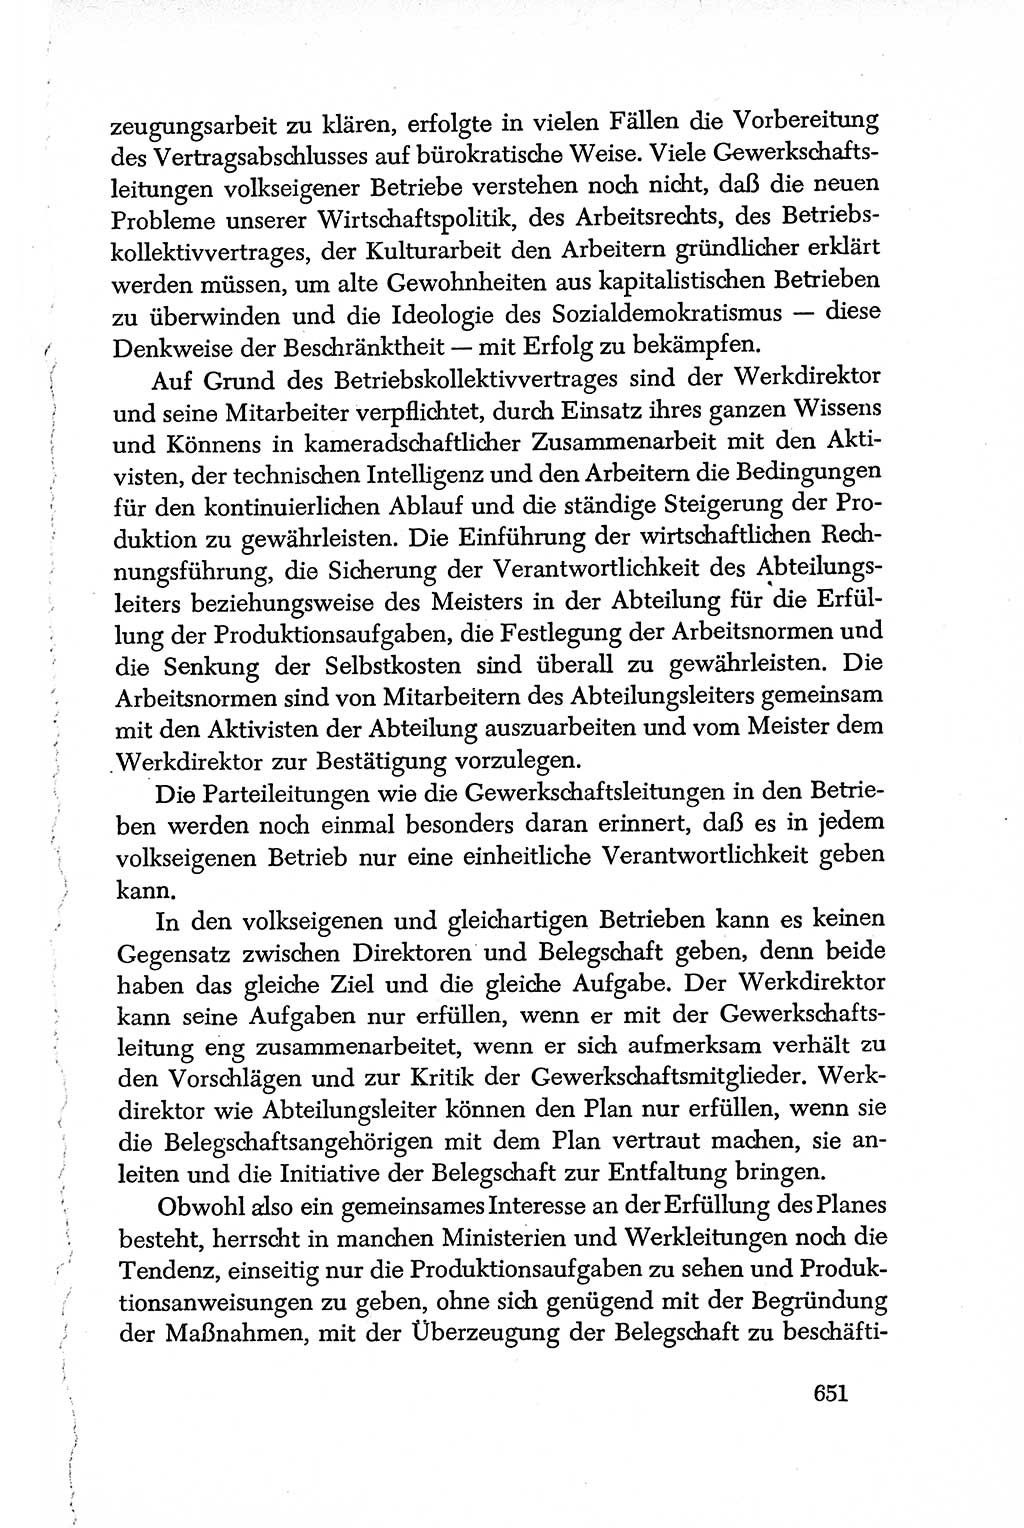 Dokumente der Sozialistischen Einheitspartei Deutschlands (SED) [Deutsche Demokratische Republik (DDR)] 1950-1952, Seite 651 (Dok. SED DDR 1950-1952, S. 651)